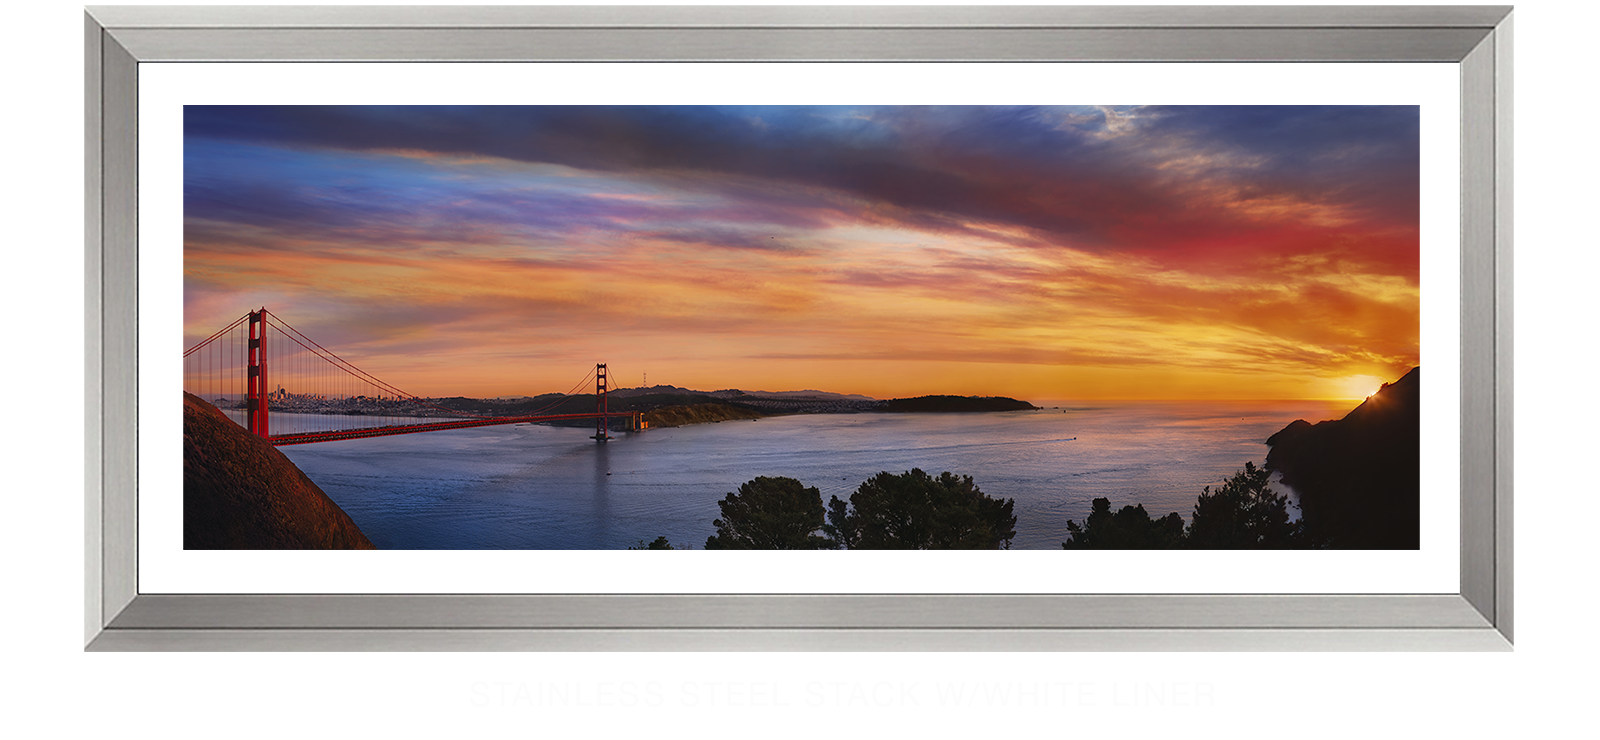 6GoldenGateBridge Stainless Steel Stack w_Wht Liner T